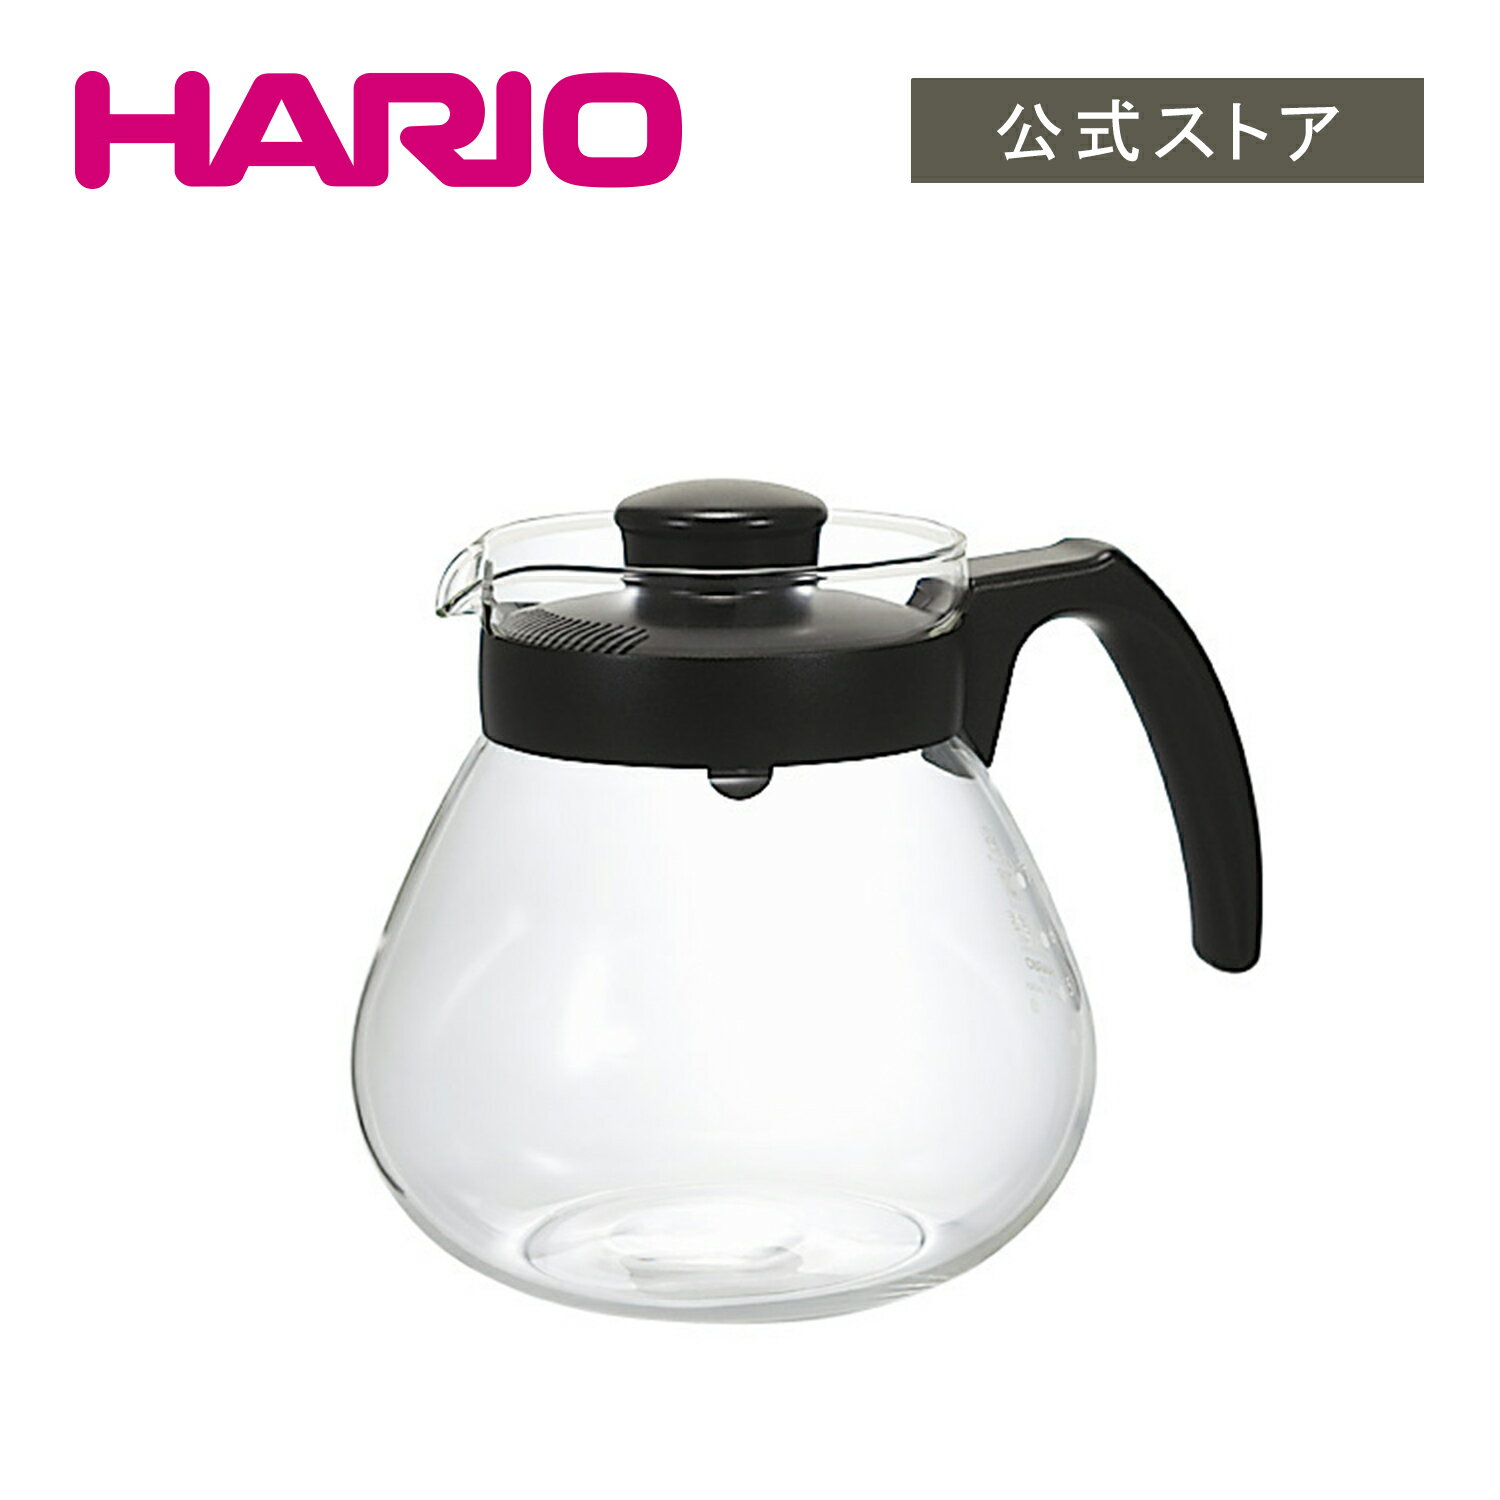 【公式ショップ】HARIO コーヒー&ティーサーバー テコ　HARIO ハリオ 公式 サーバー コーヒーサーバー ガラス ティーサーバー ポット ティーポット コーヒーポット